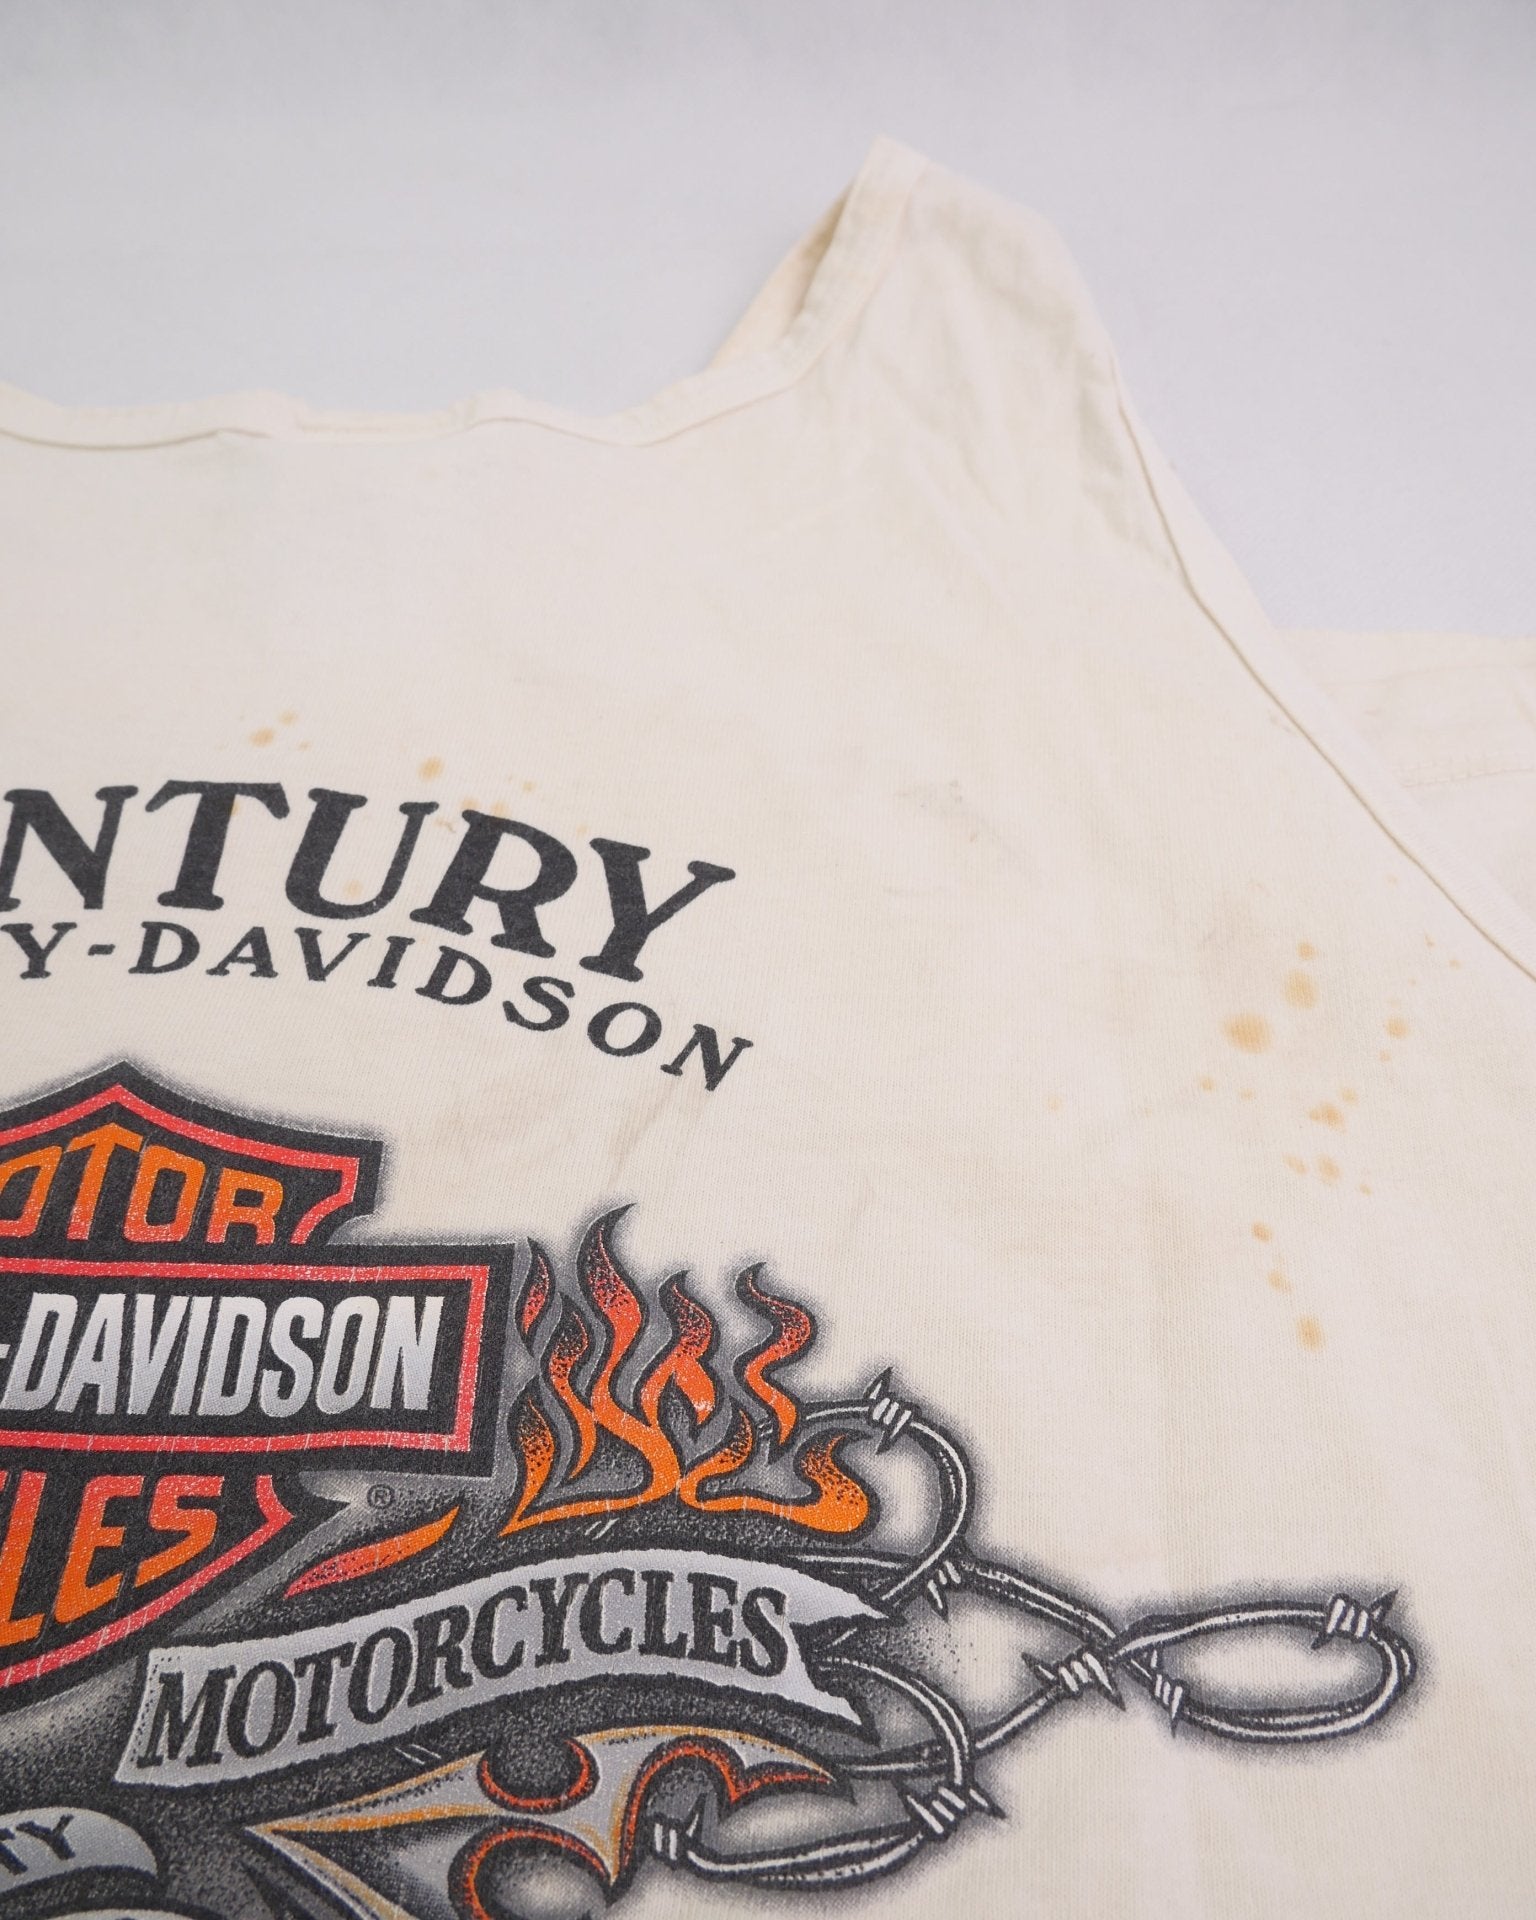 Harley Davidson printed Logo Vintage Tank Top Shirt - Peeces